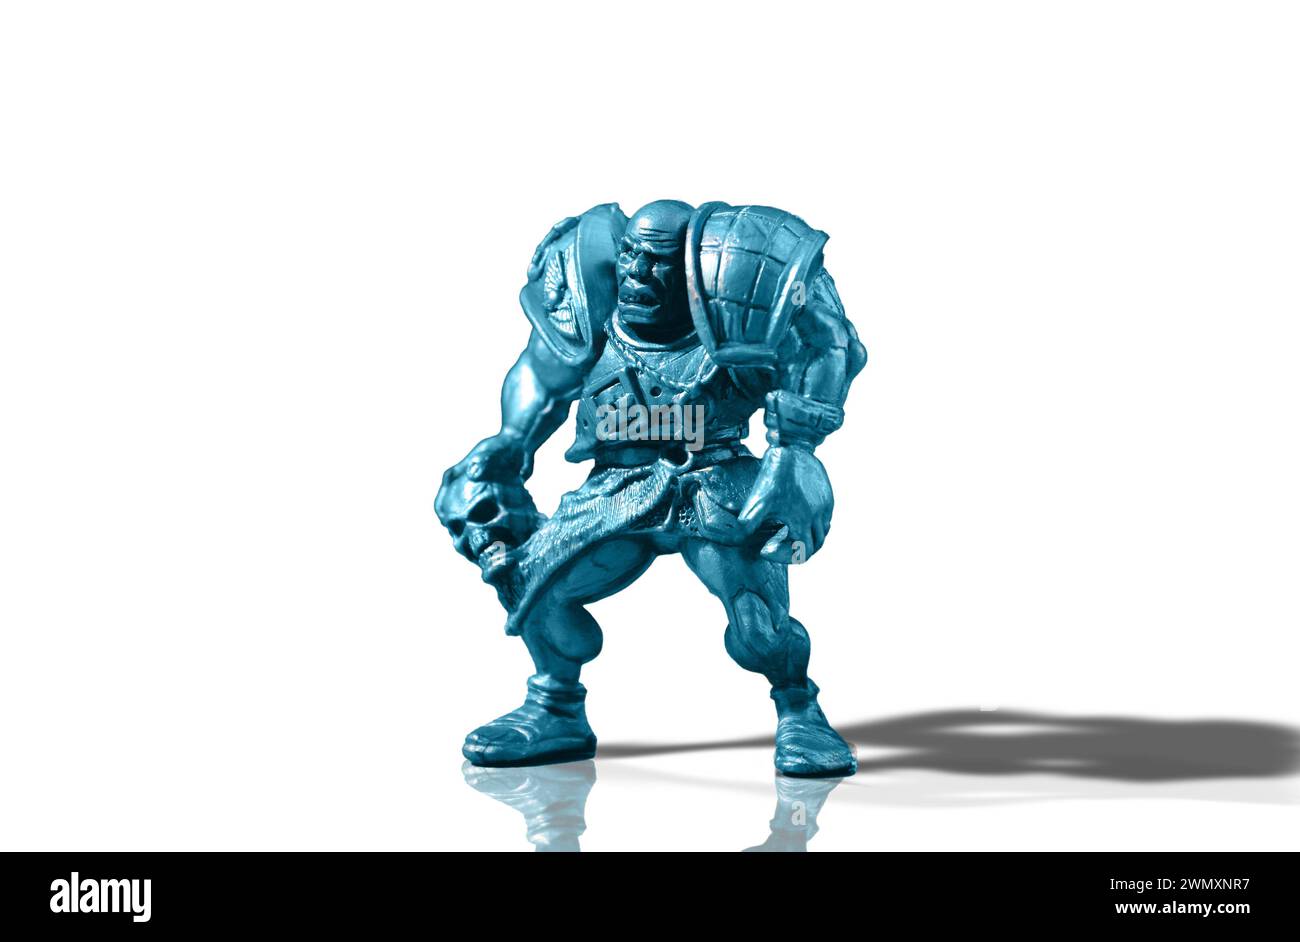 Figurine d'un guerrier chauve agressif et vicieux en armure avec un crâne isolé sur un fond blanc avec reflet et ombre ajoutés Banque D'Images